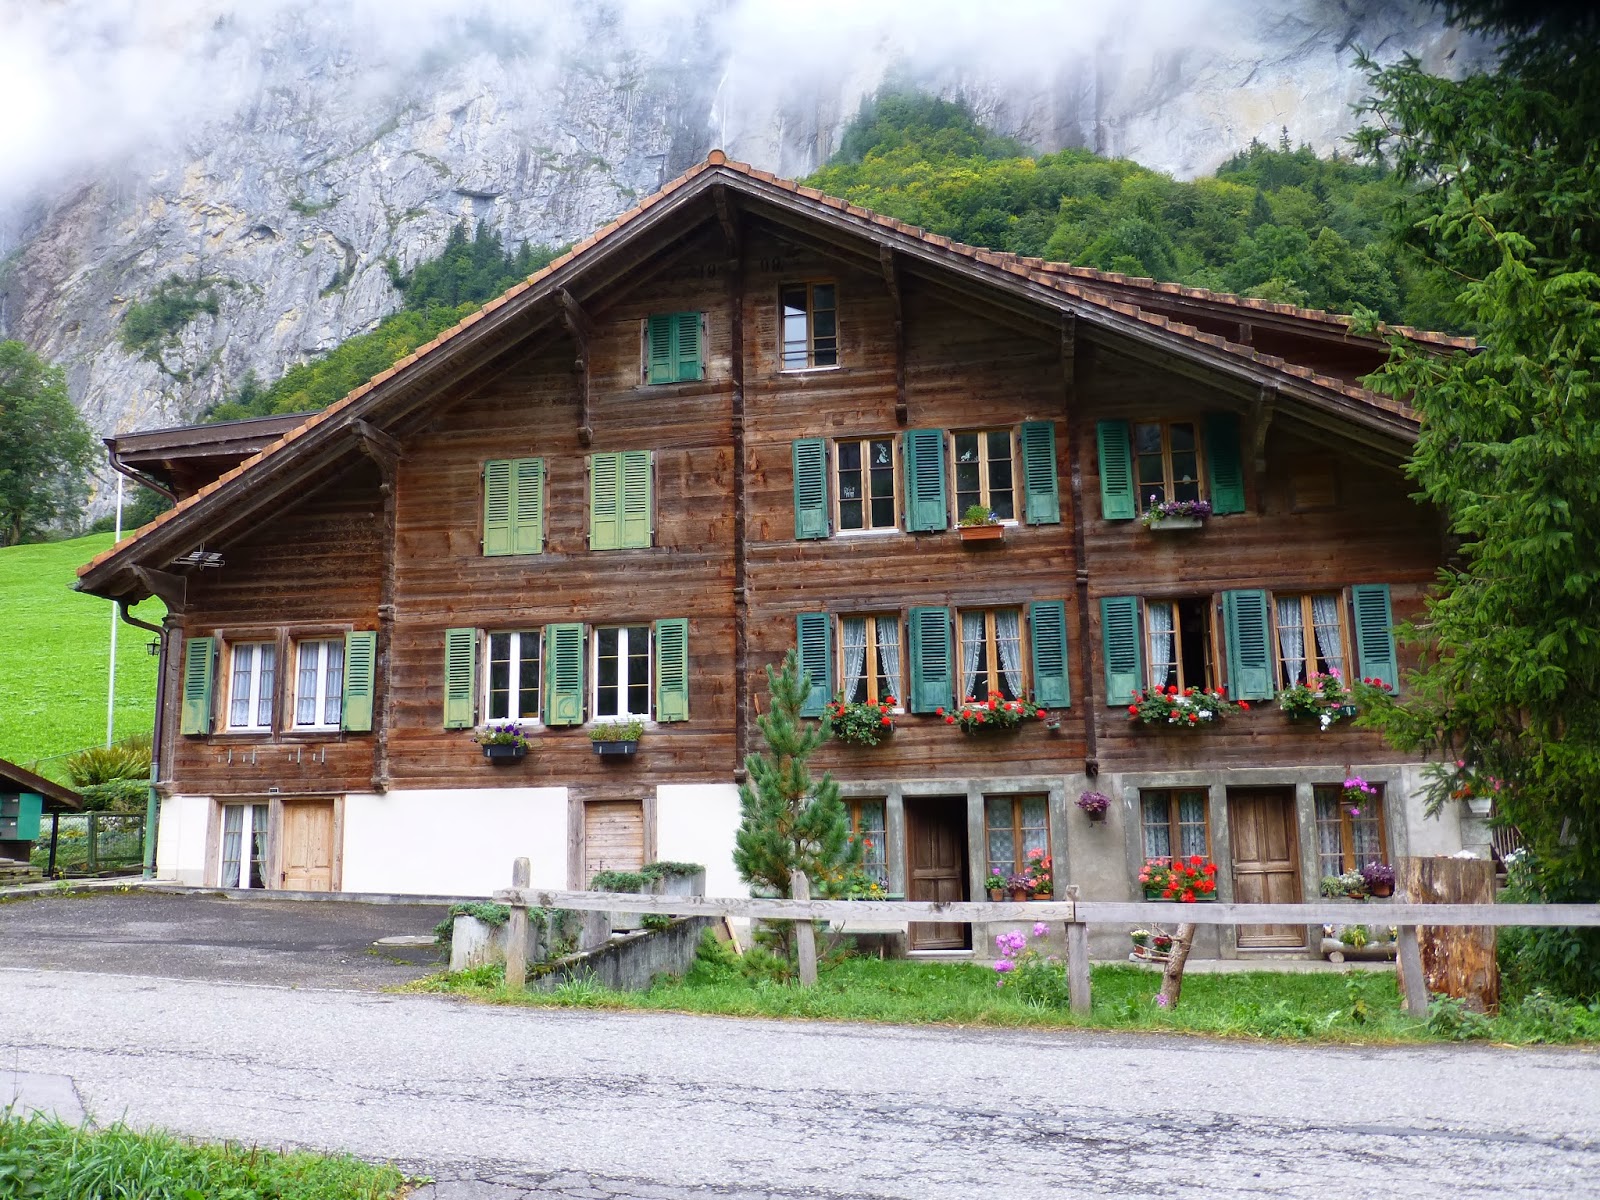 Scottish Girl in Zurich: Alpine Houses